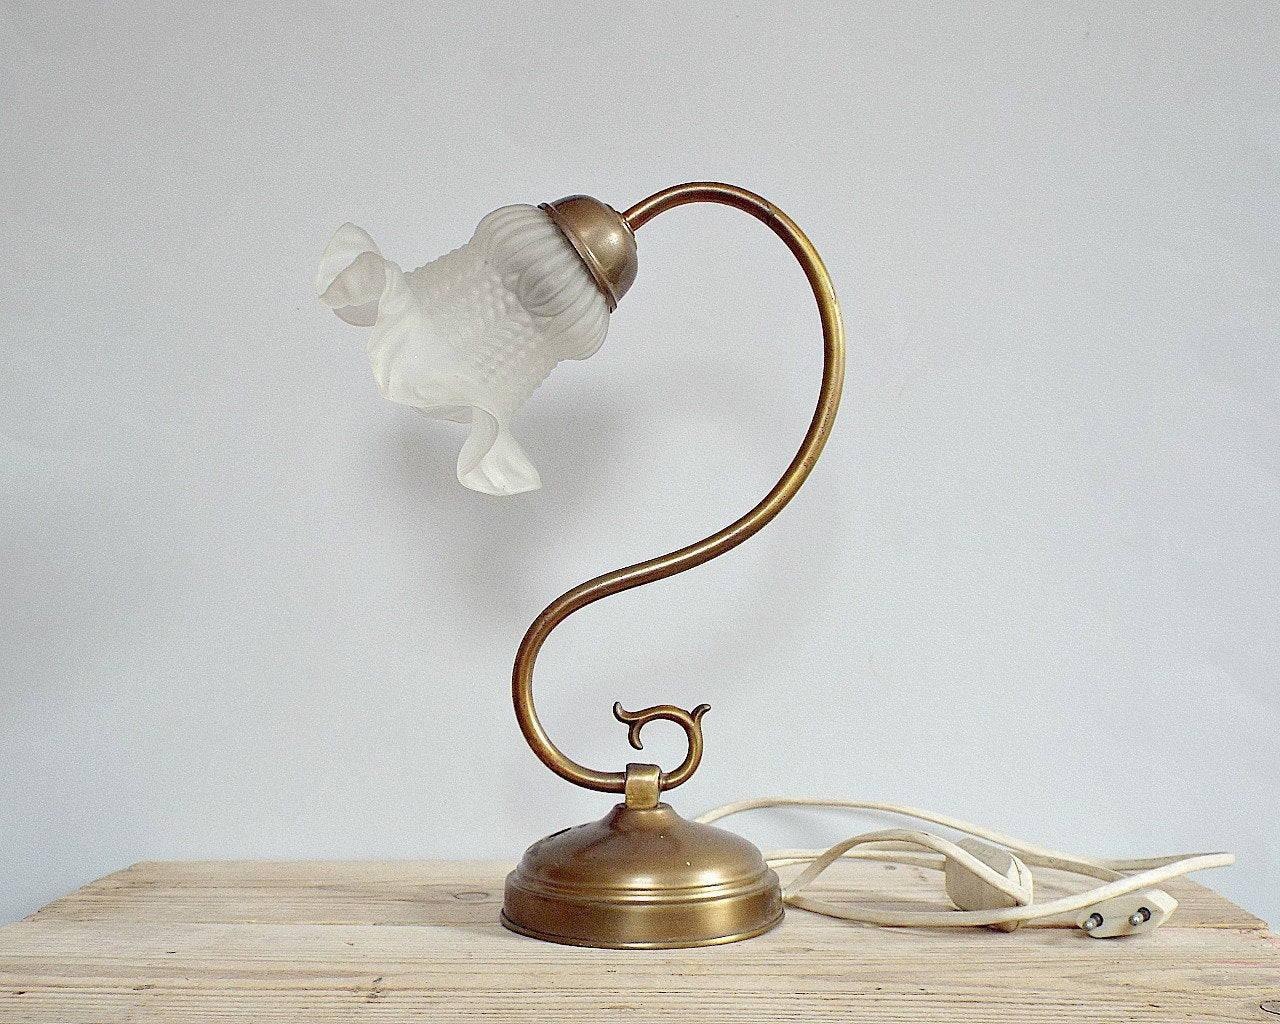 Best ideas about Antique Desk Lamp
. Save or Pin ART NOUVEAU French lamp vintage antique desk lamp amazing Now.